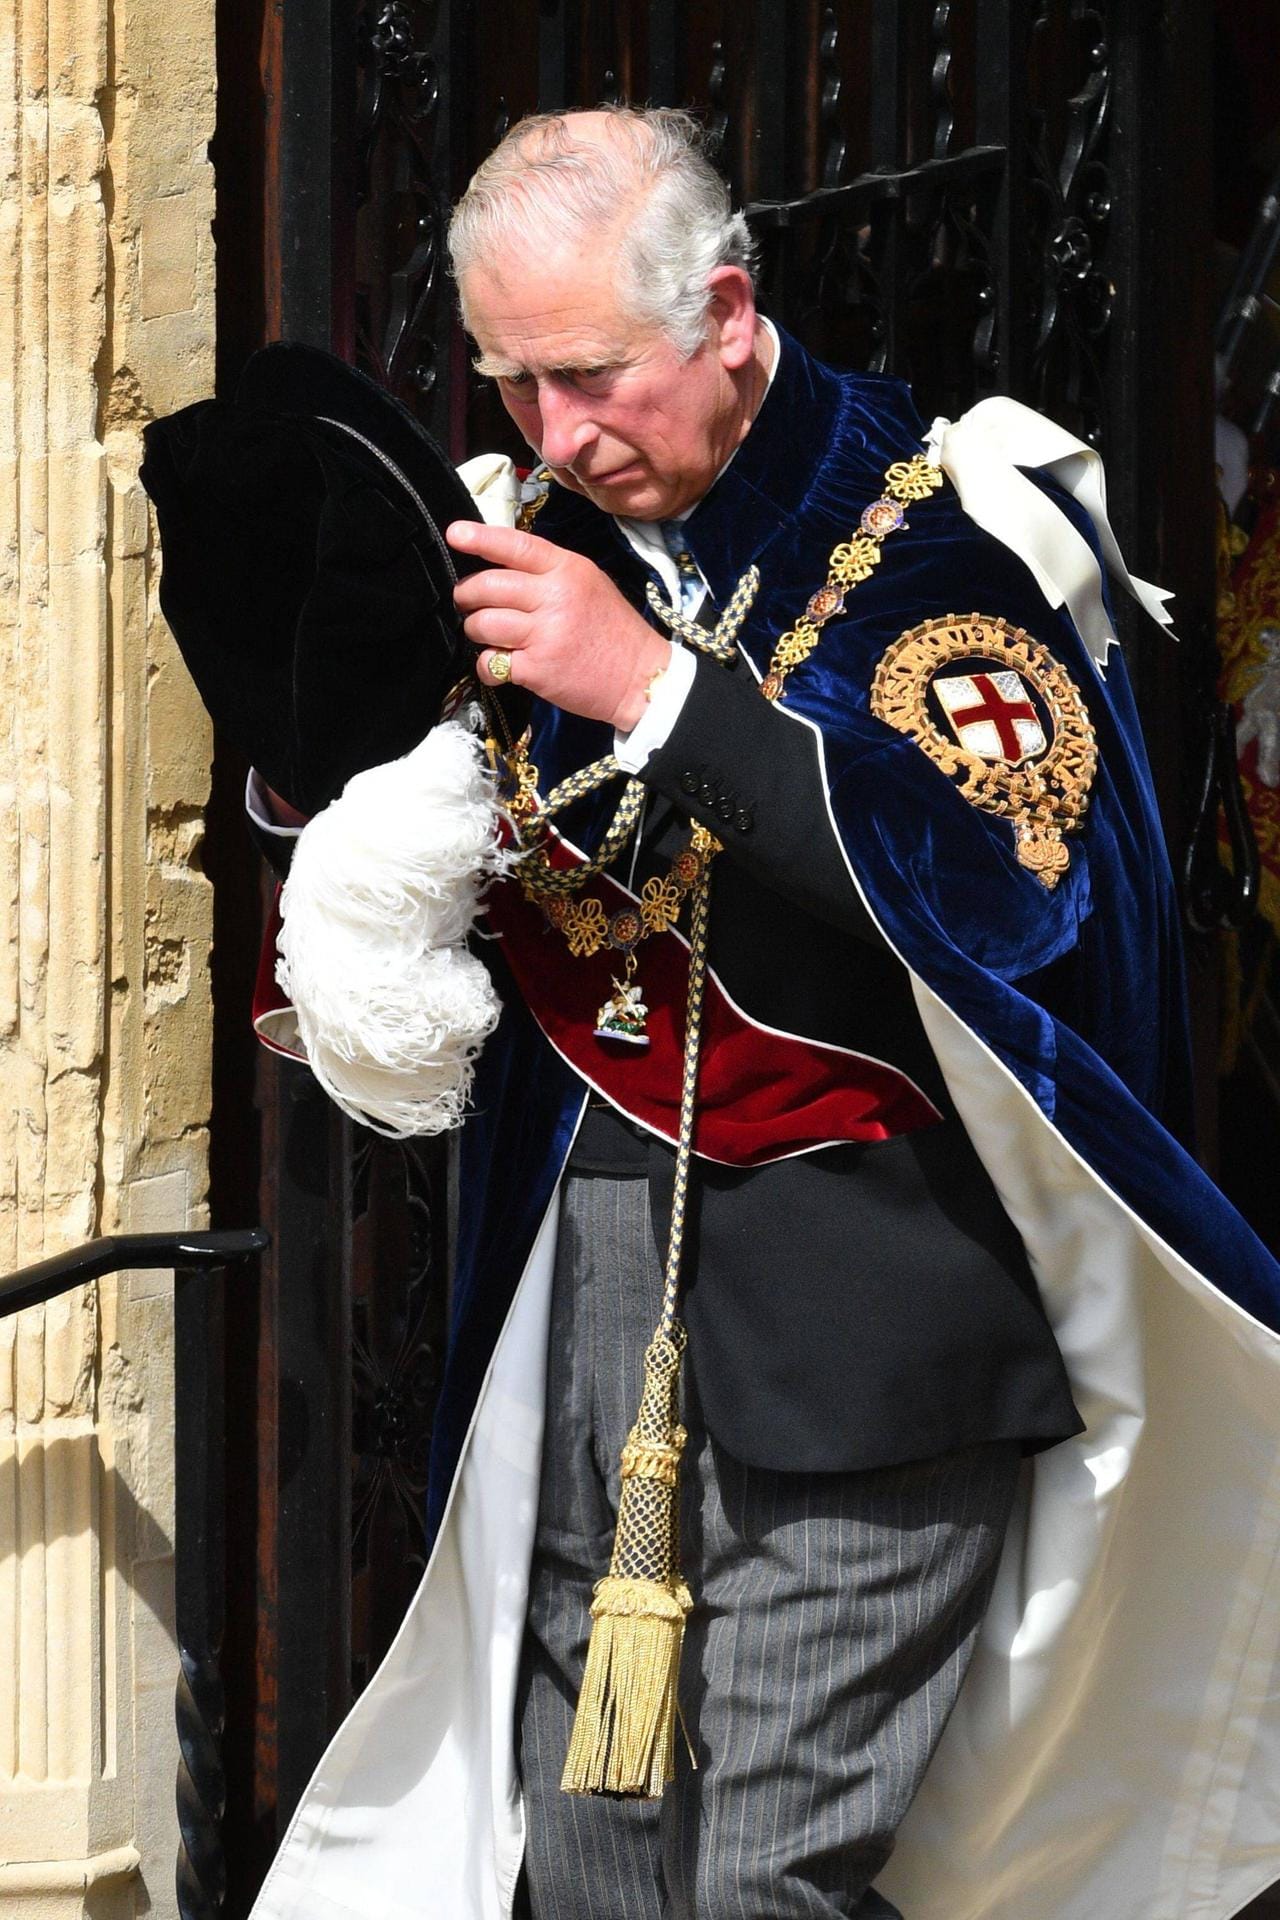 Darf nicht fehlen: Als zukünftiger König von England schauen alle natürlich auch auf Prinz Charles.